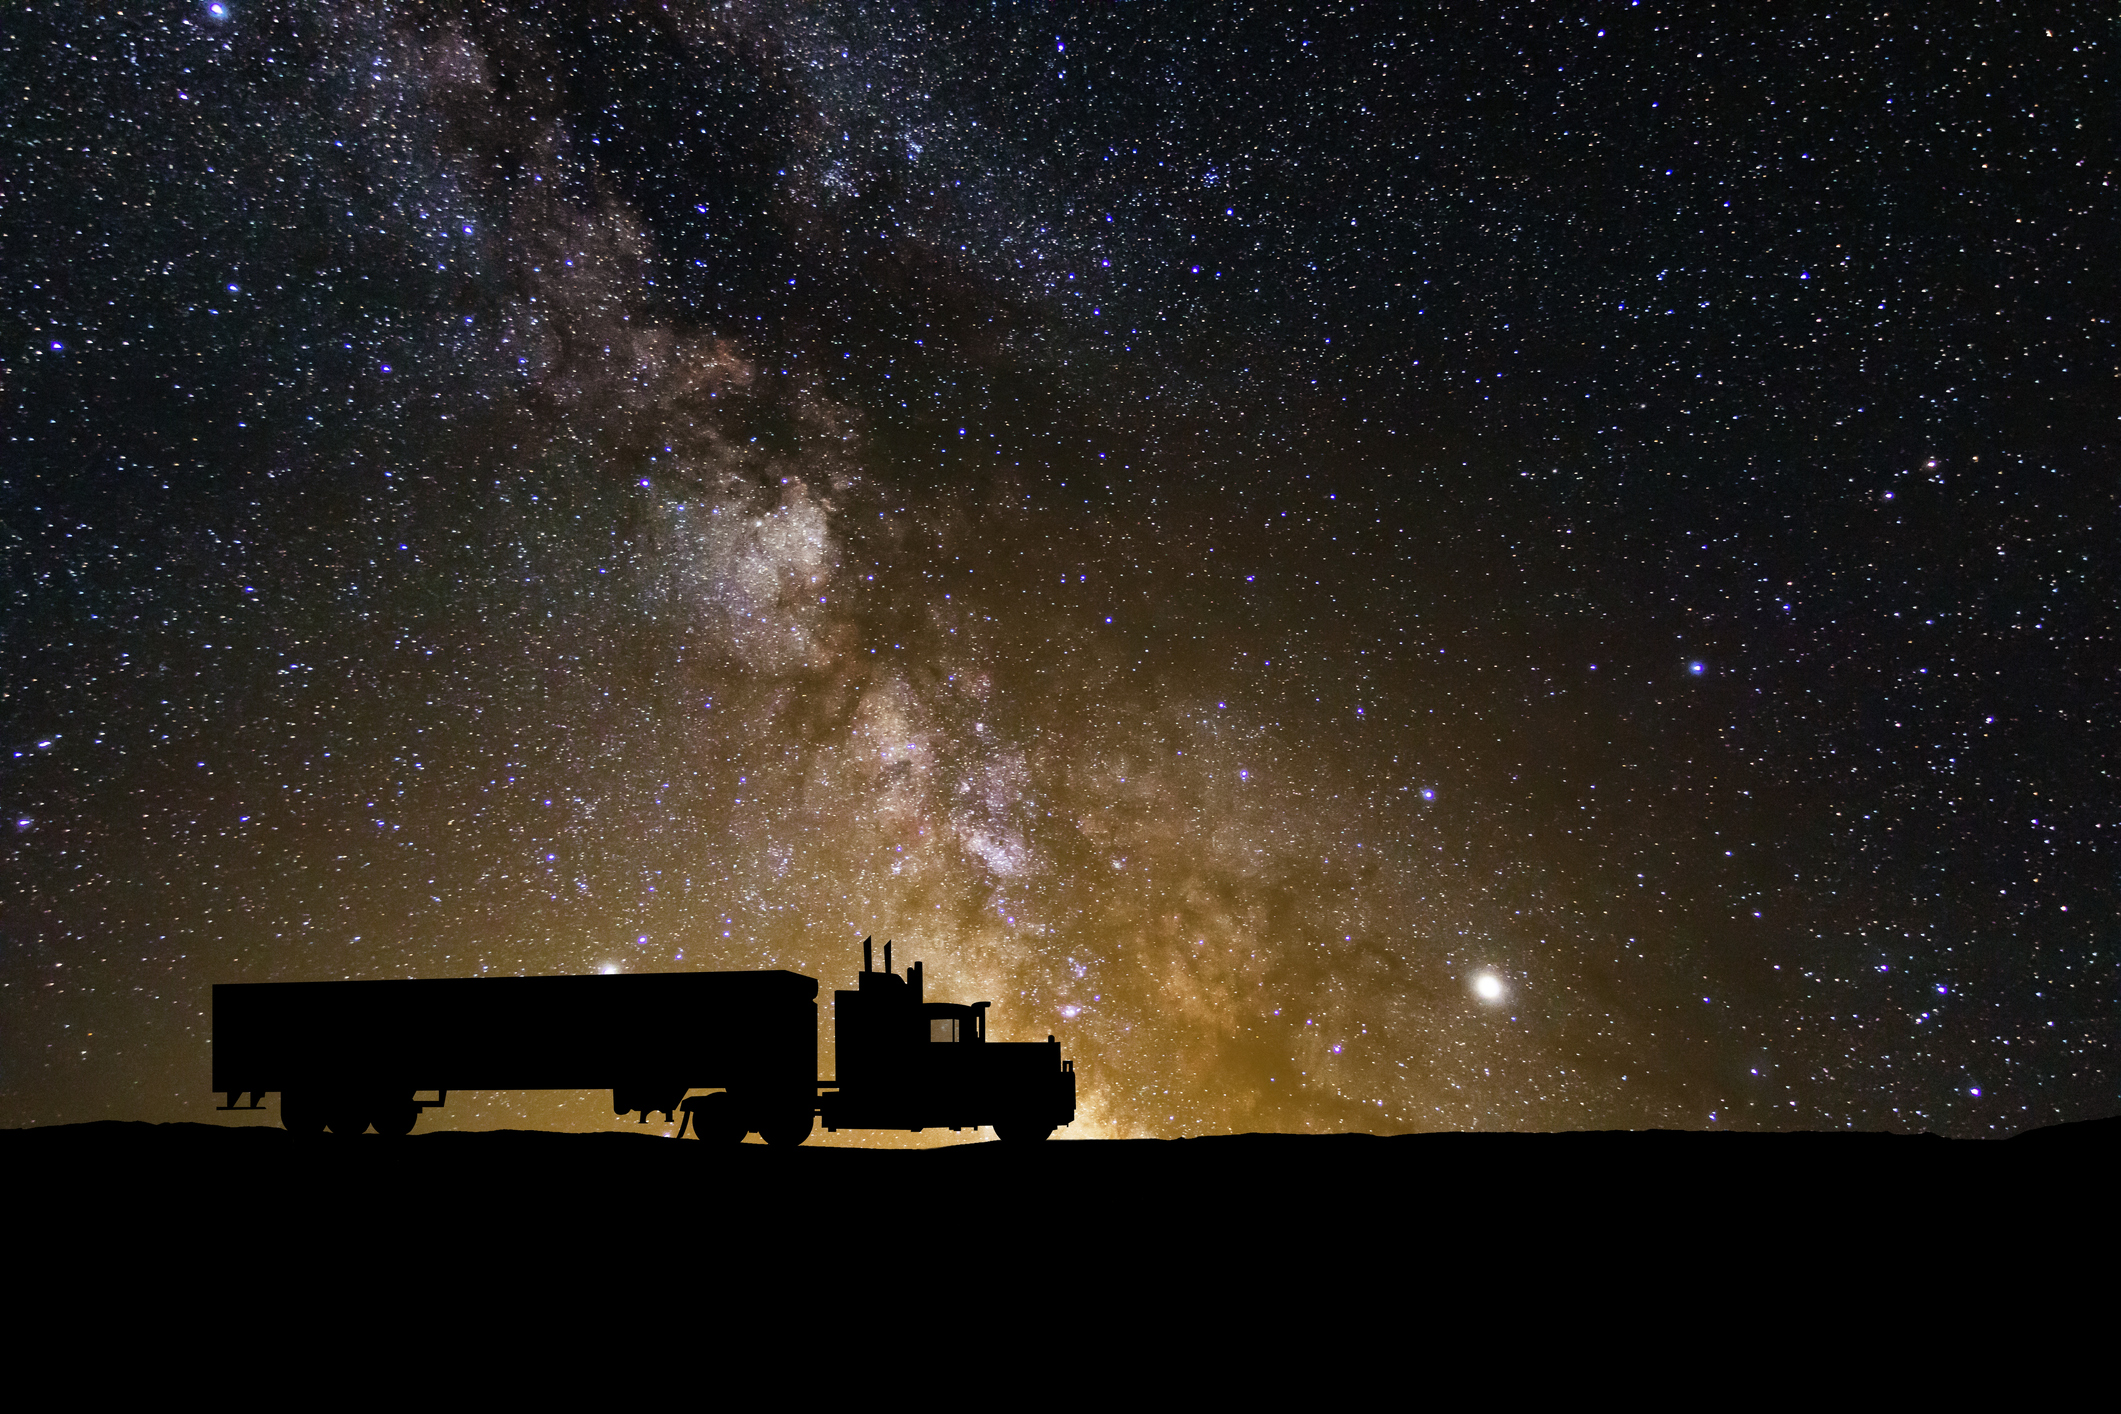 「星間遊星」の振動は実際に地元のトラックで発生します。 または有名科学者の事実を確認